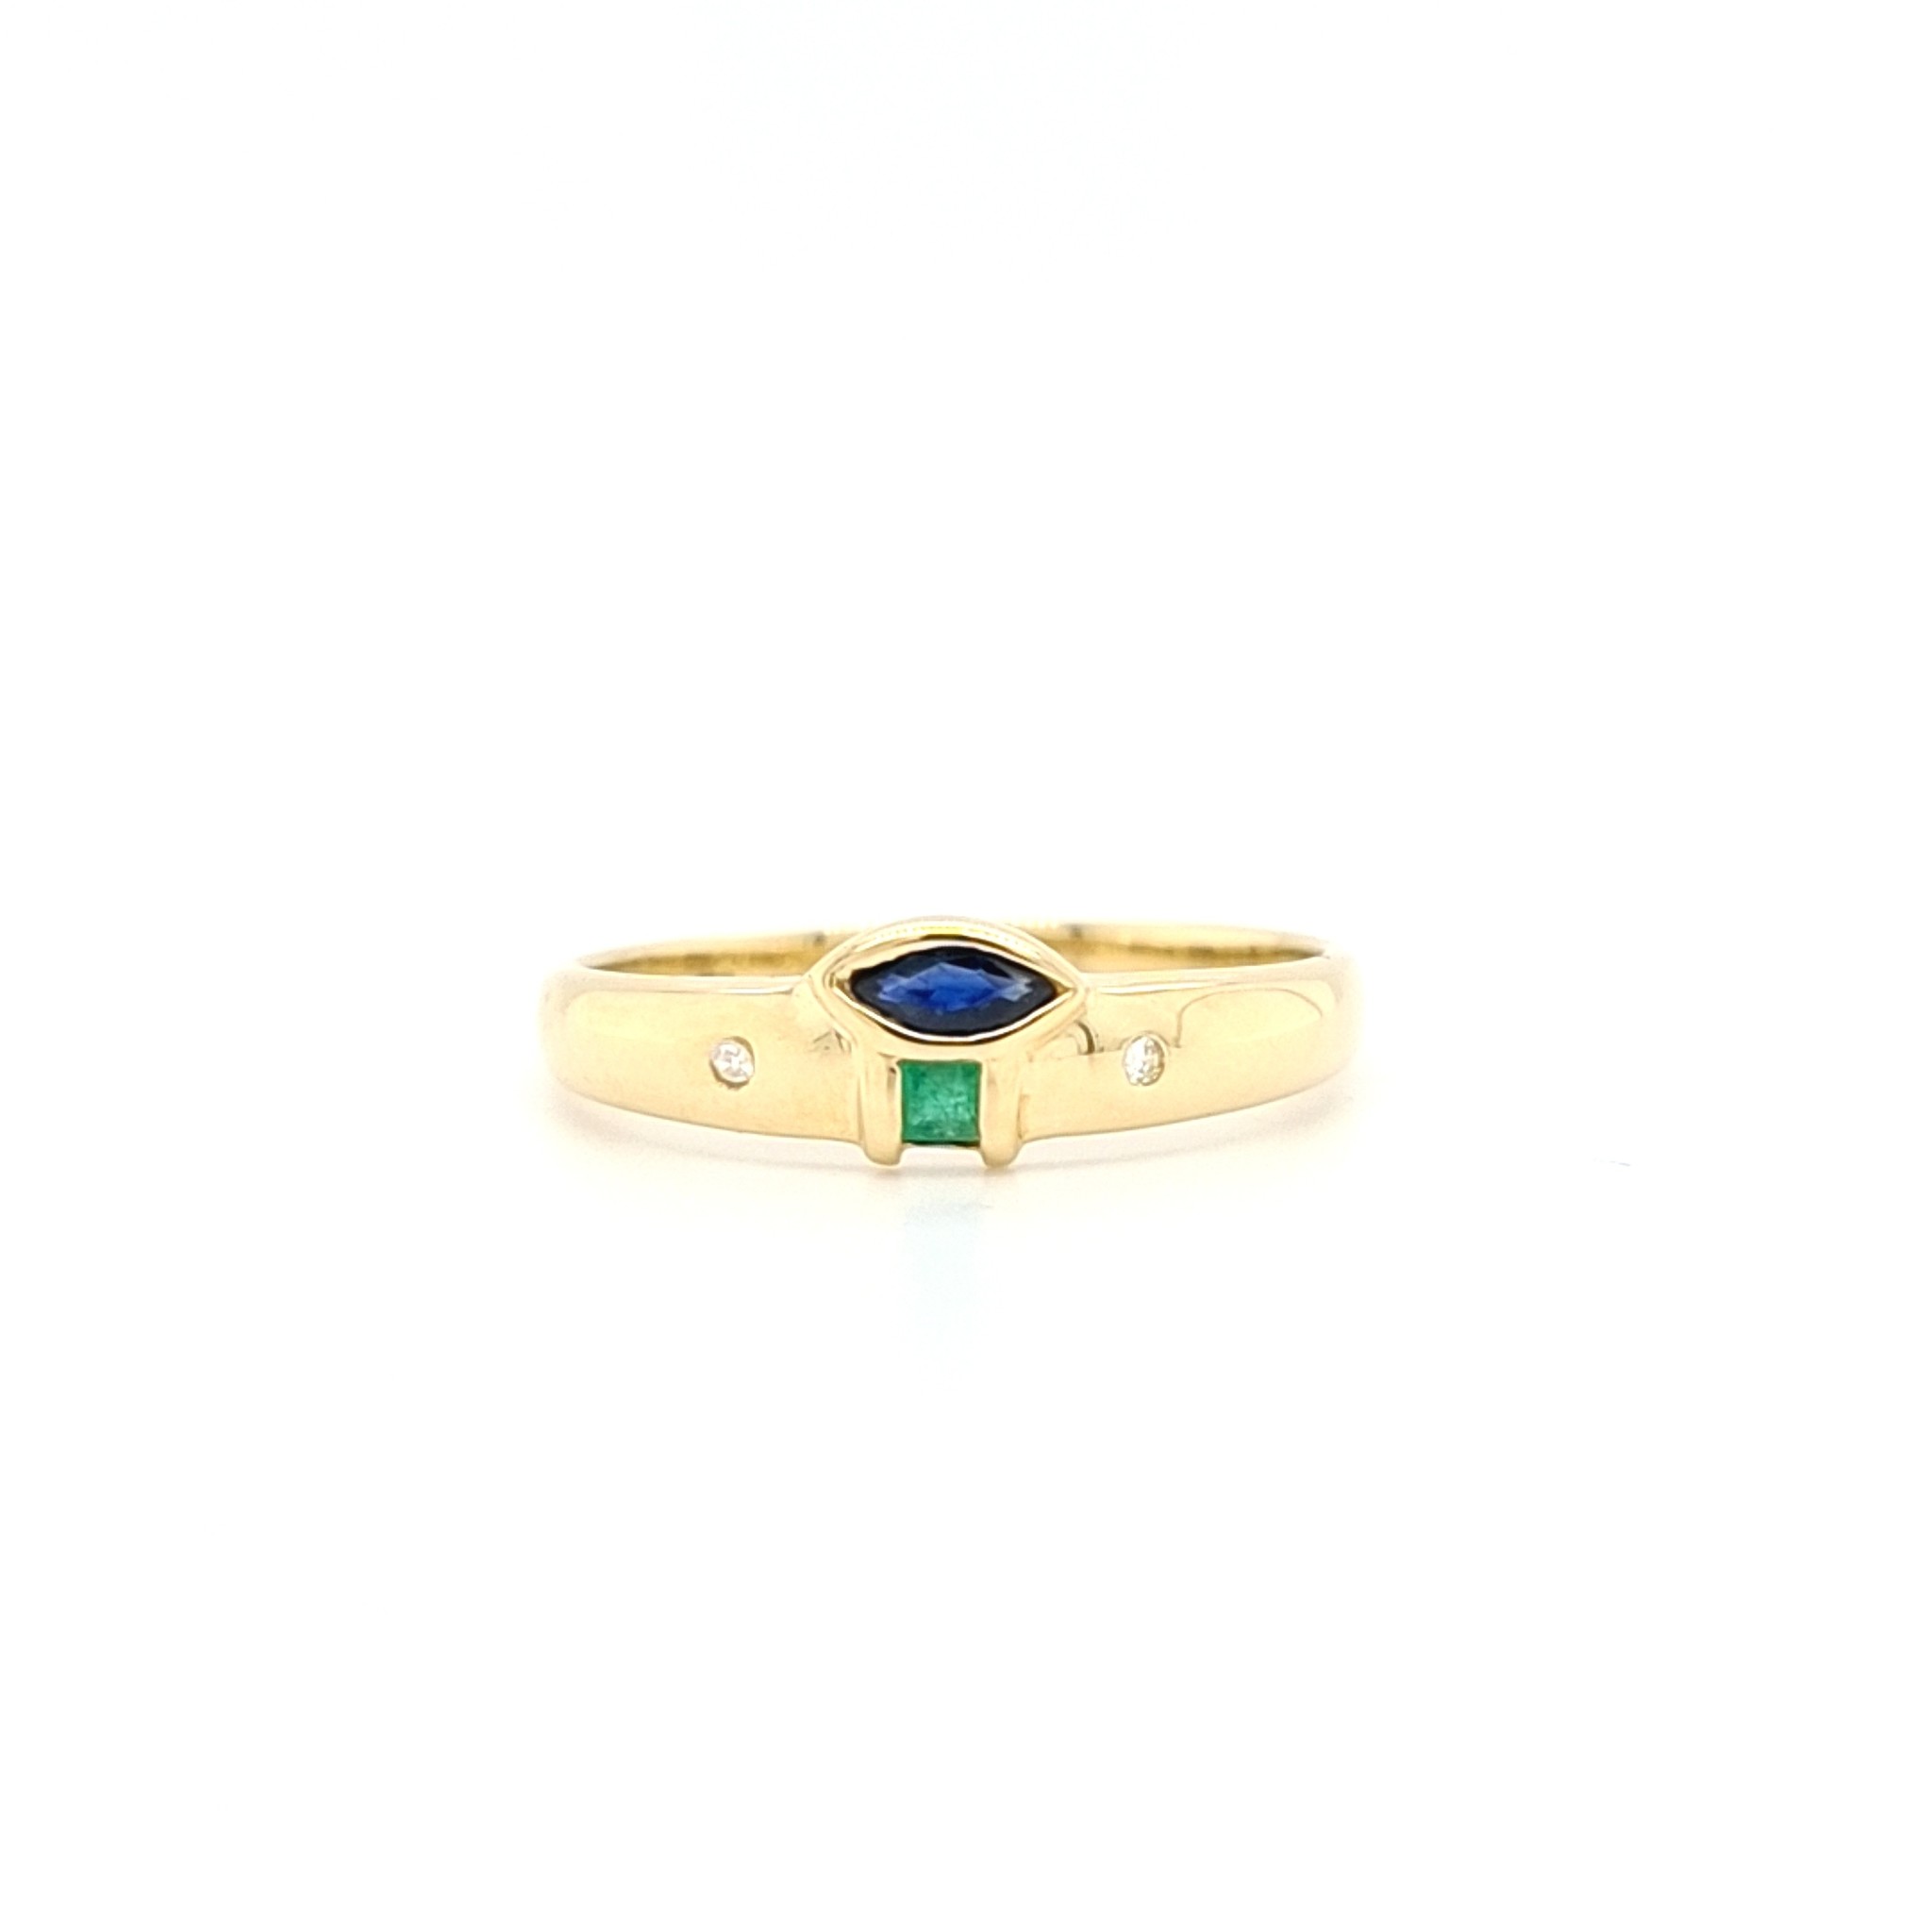 18 Karaat geel ring met 0.01 krt briljant saffier smaragd 1.8 gram maat 17.5 - Inkoop & verkoop goud, zilver, juwelen, sinds 1946